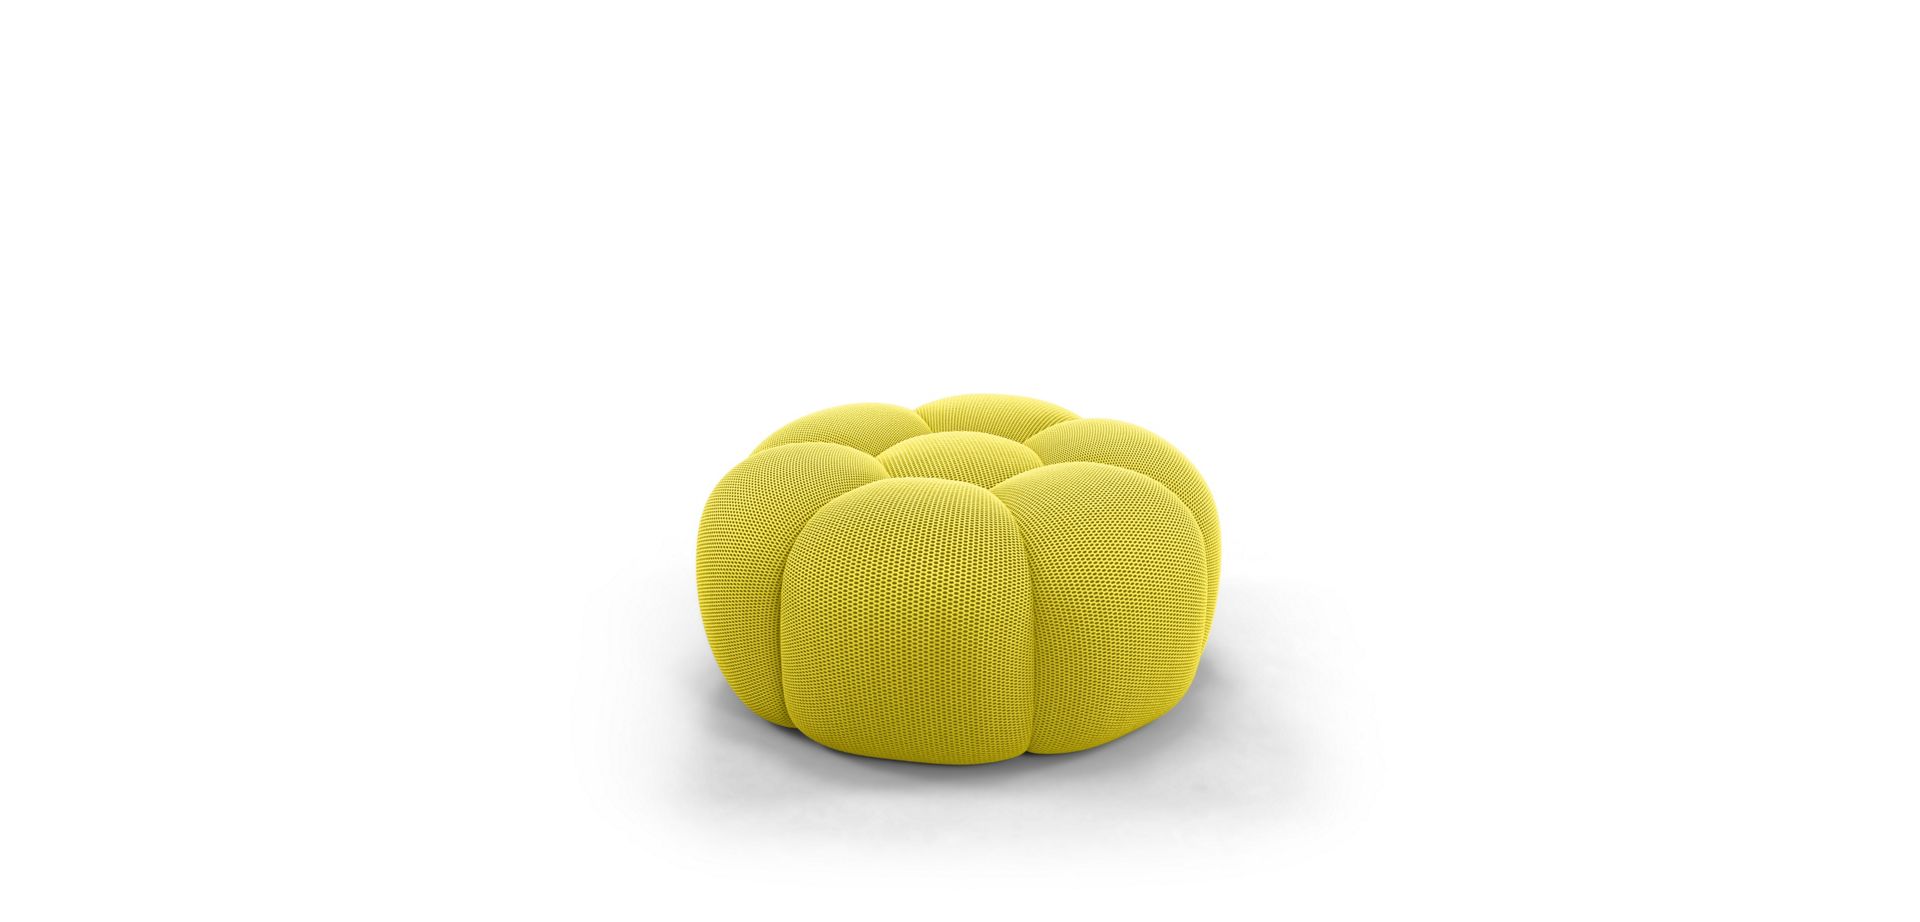 Bellissimo divano+pouf Bubble di #RocheBobois 😍 (foto d…